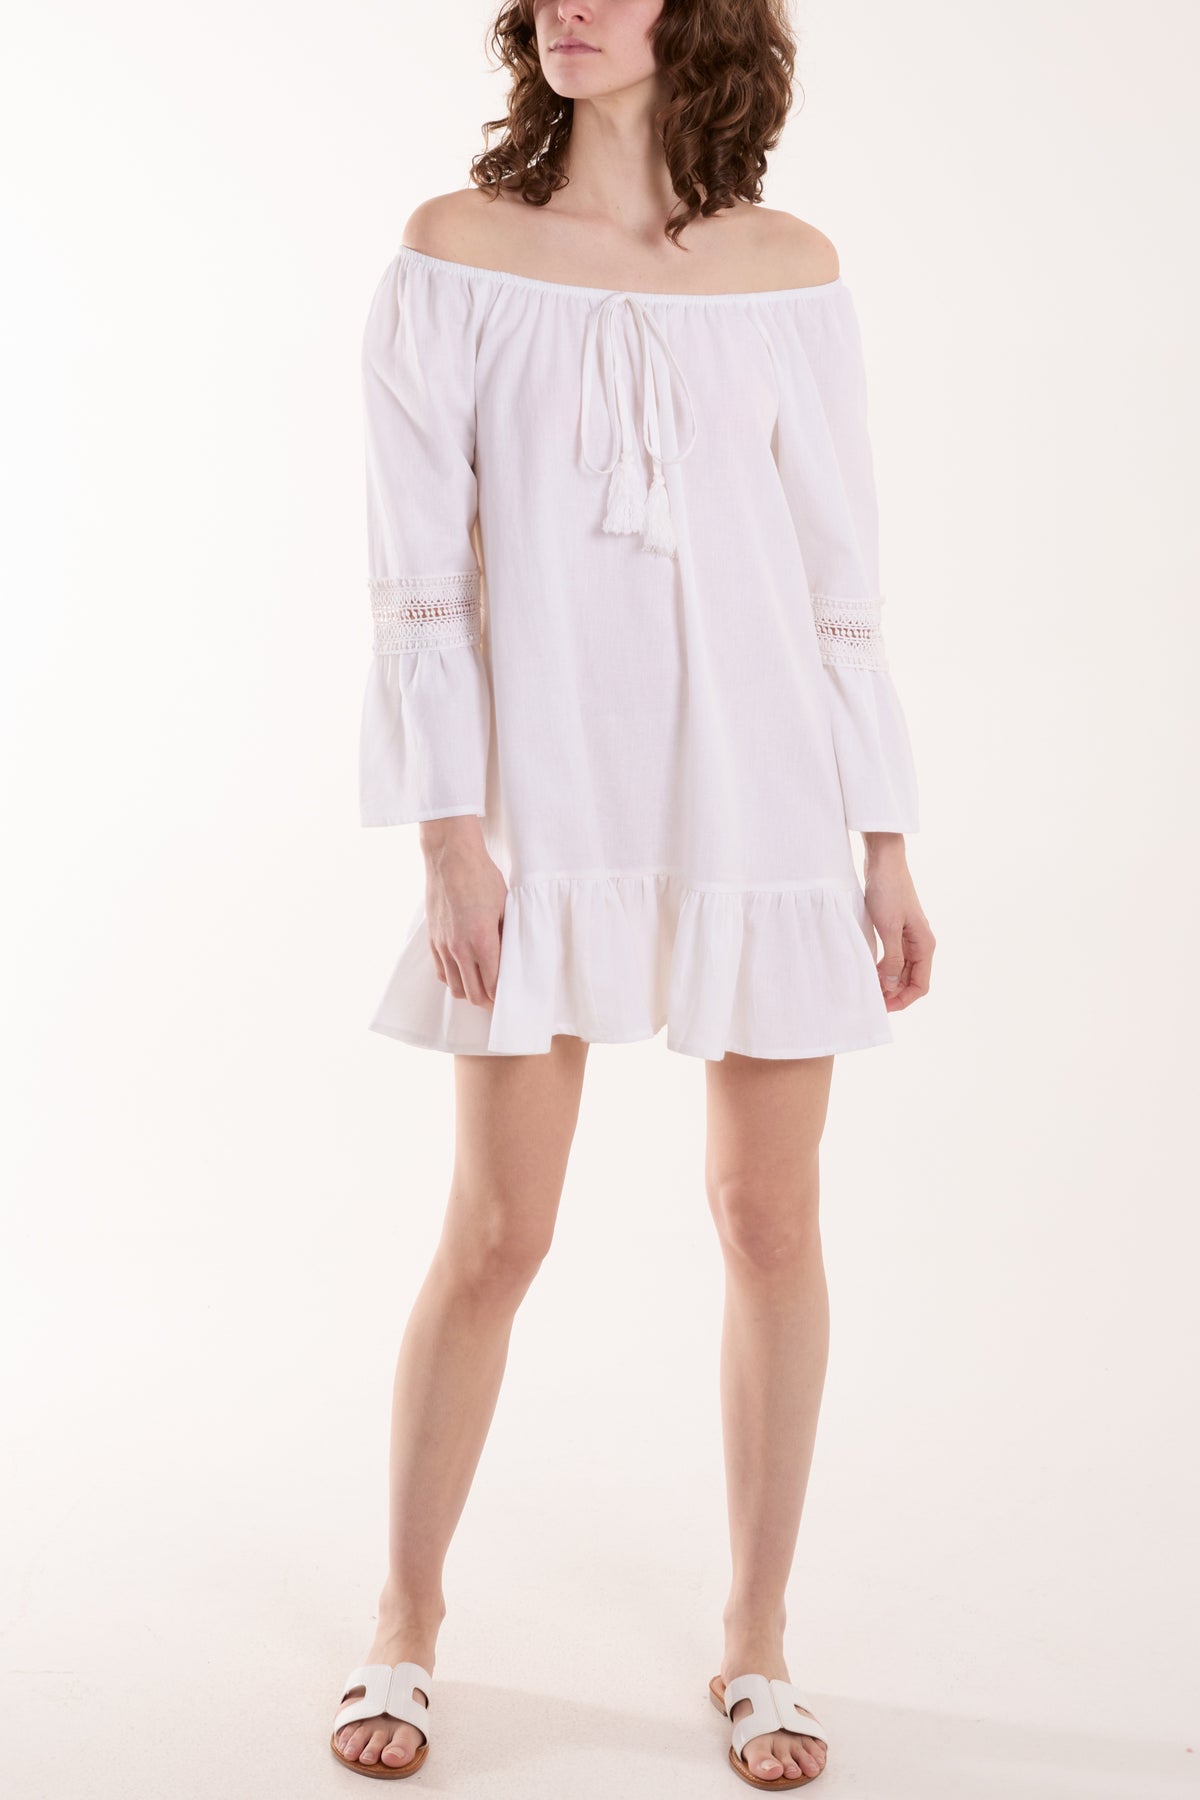 Lace Trim Tassel Tunic Bardot Mini Dress